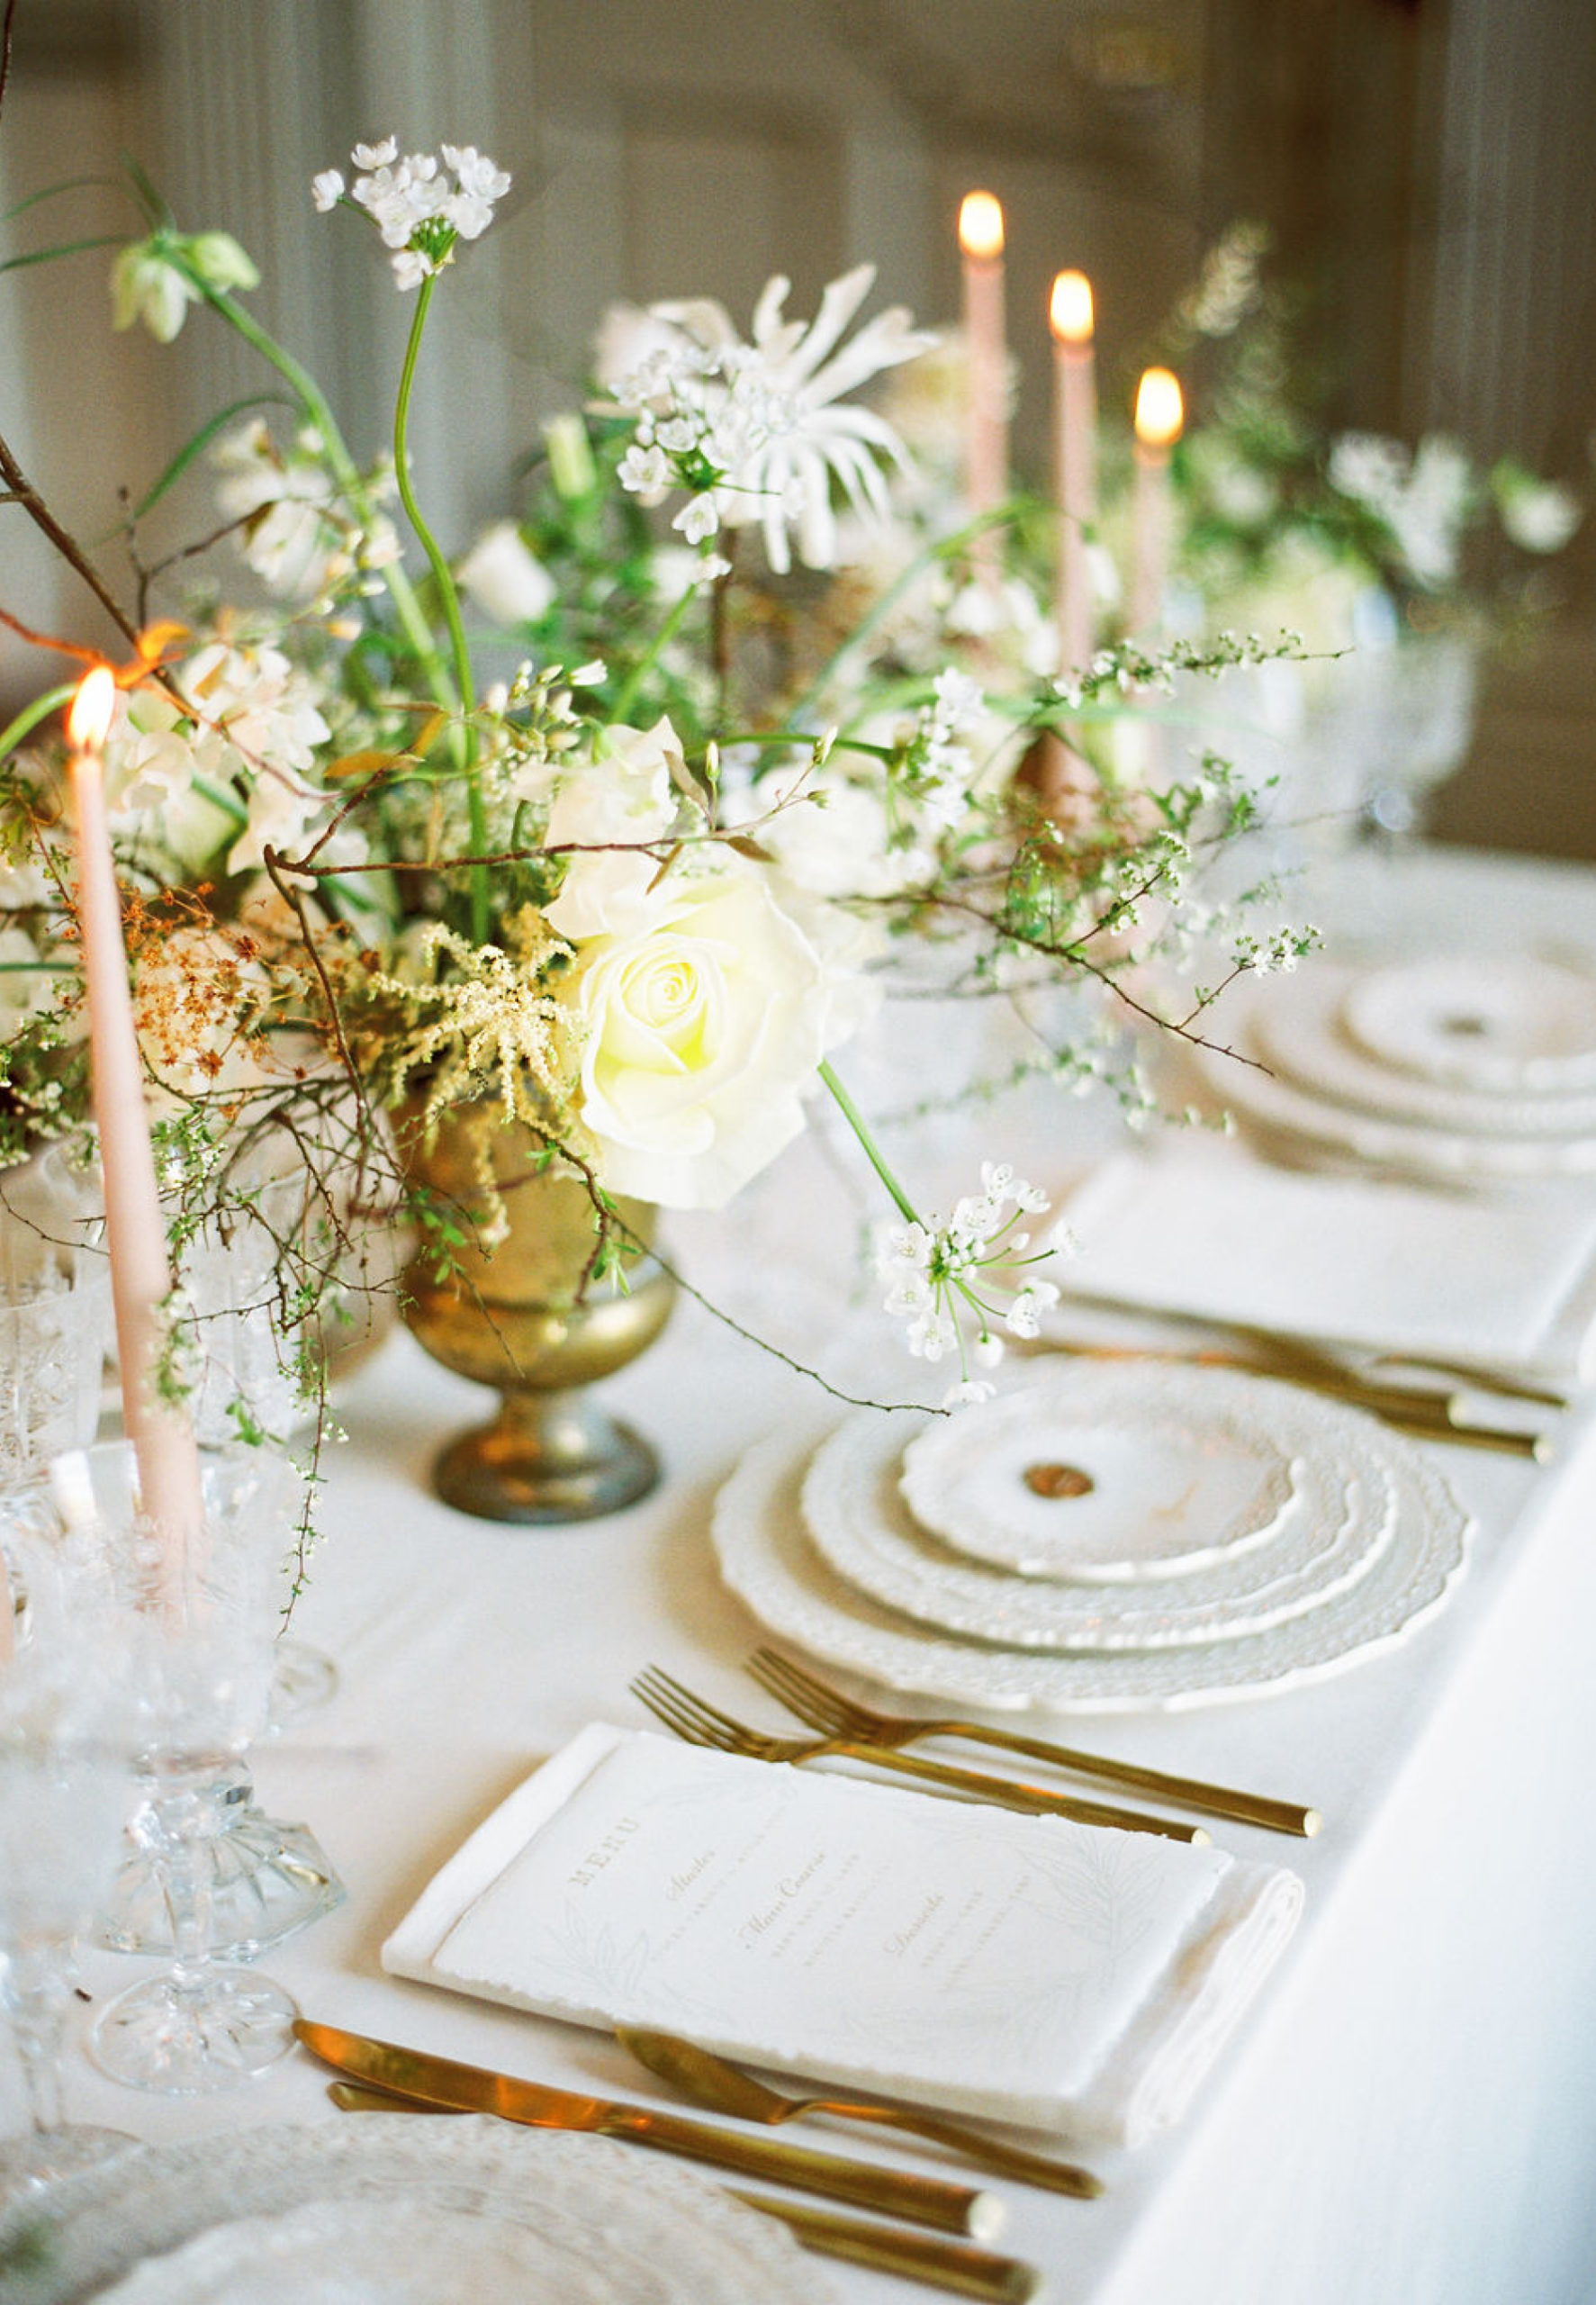 decoration de table mariage blanc et vert printemps boconnoc